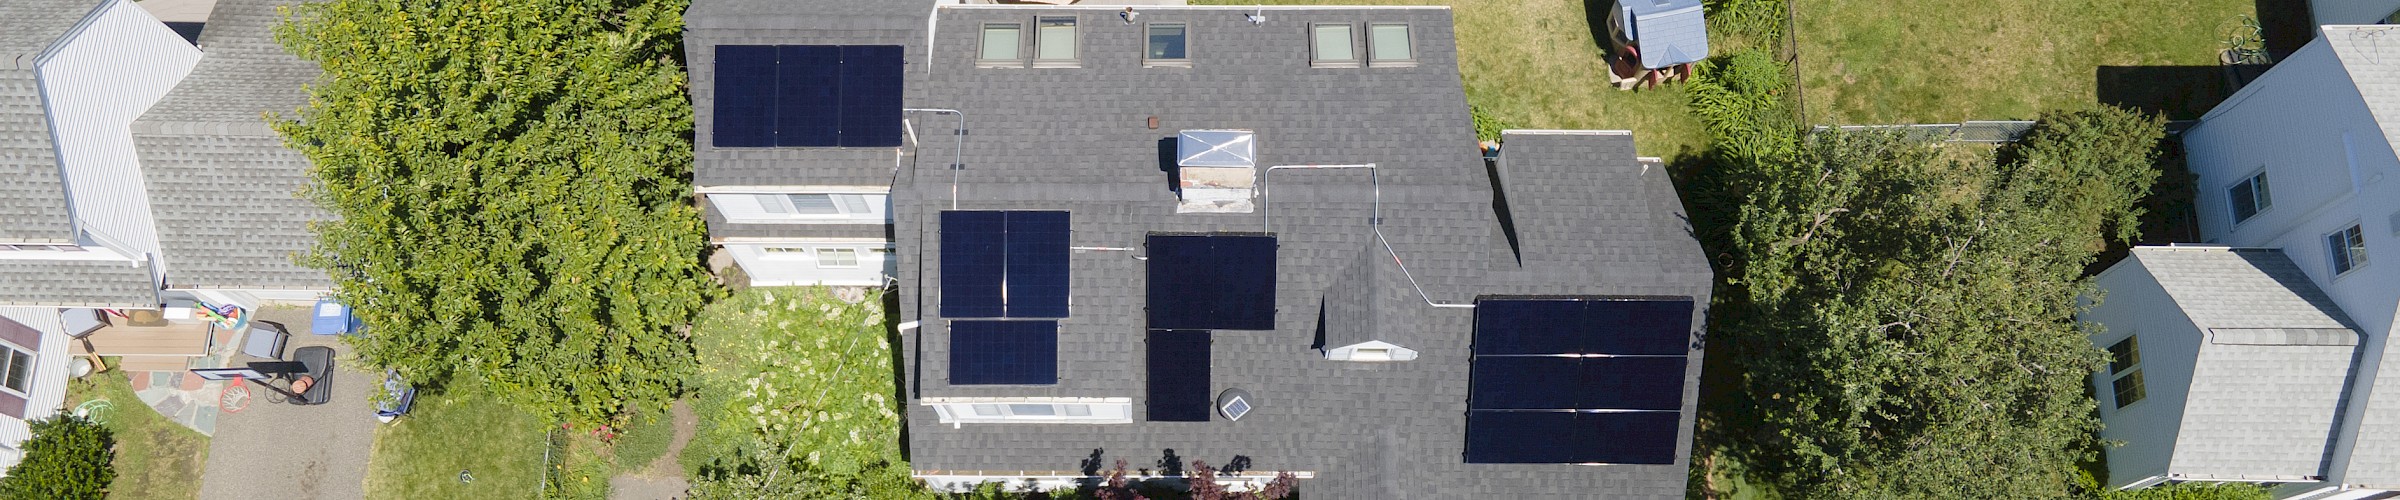 5.4 kW Solar Installation in Waltham, MA